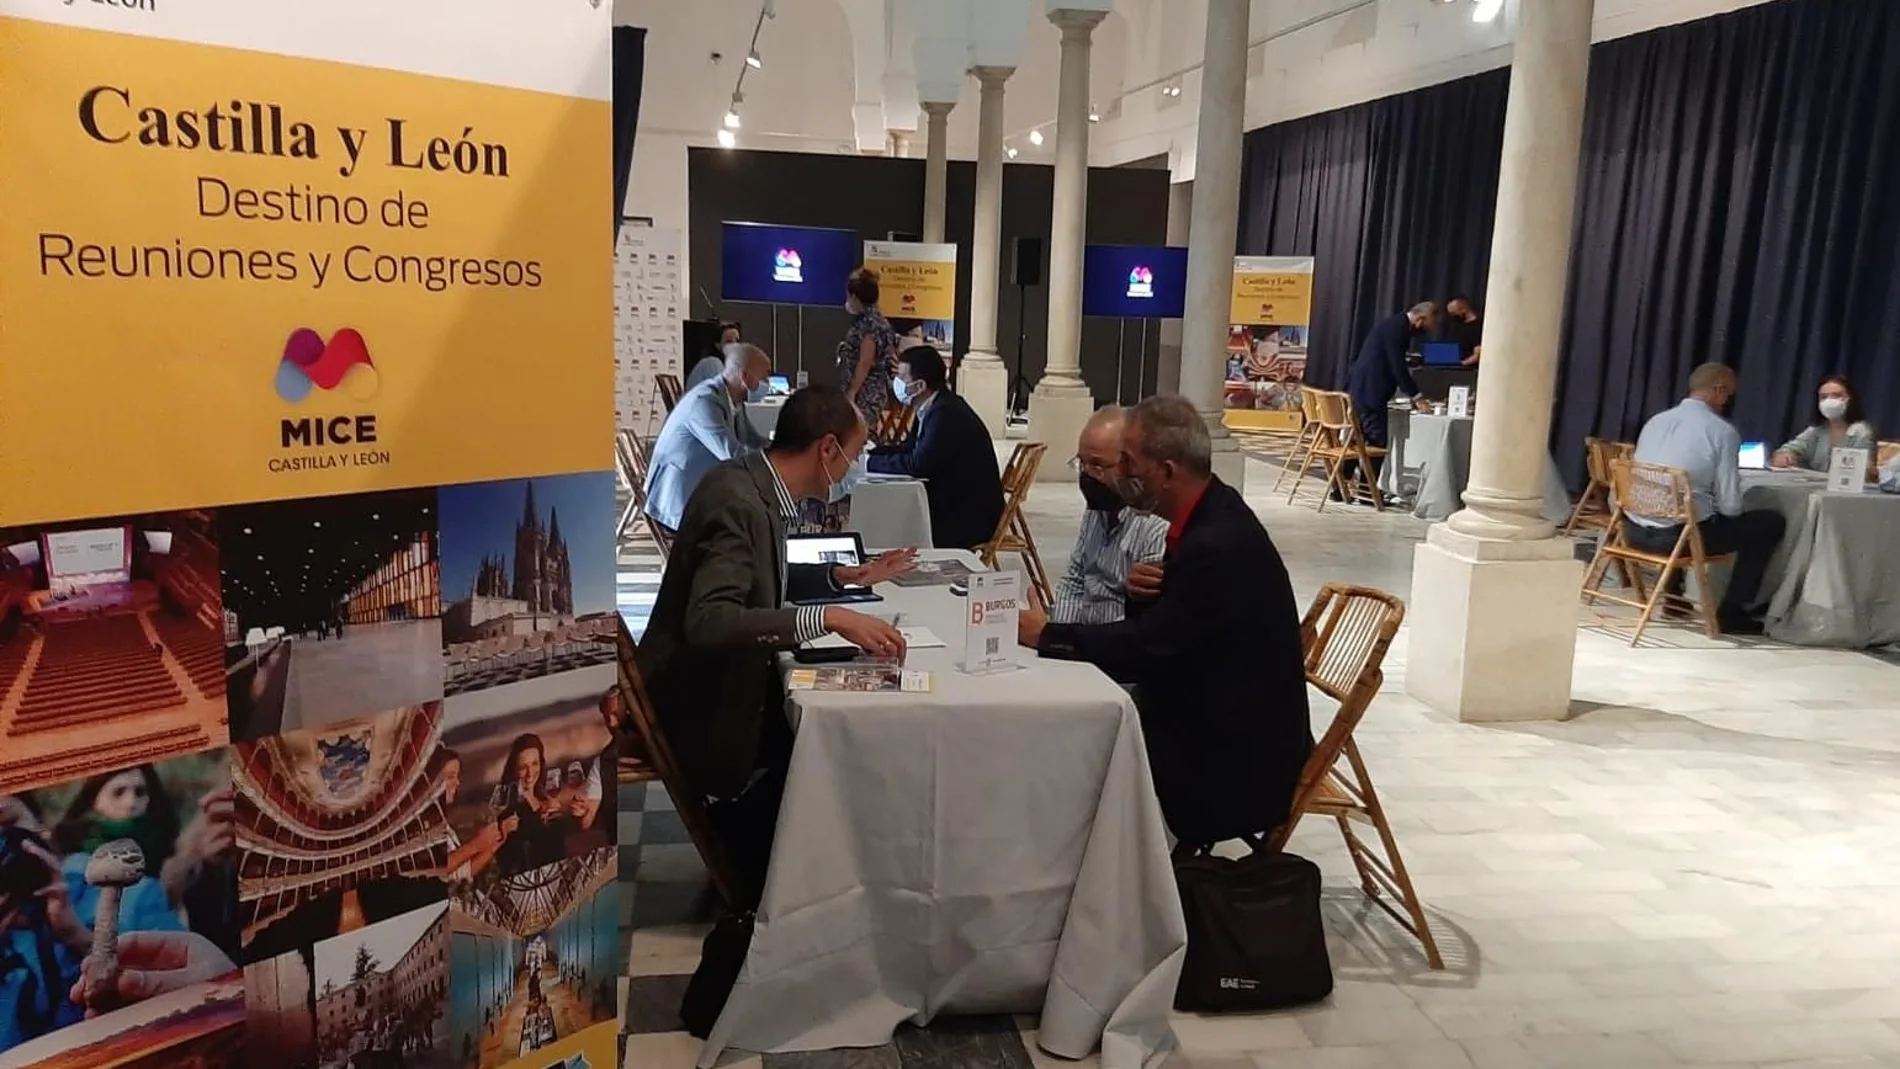 La Consejería de Cultura y Turismo presenta hoy en Sevilla su oferta de turismo de reuniones y congresos (MICE) en una jornada comercial con más de 30 empresas pertenecientes al sector económico-comercial, agencias y organizadores profesionales de congresos y reuniones